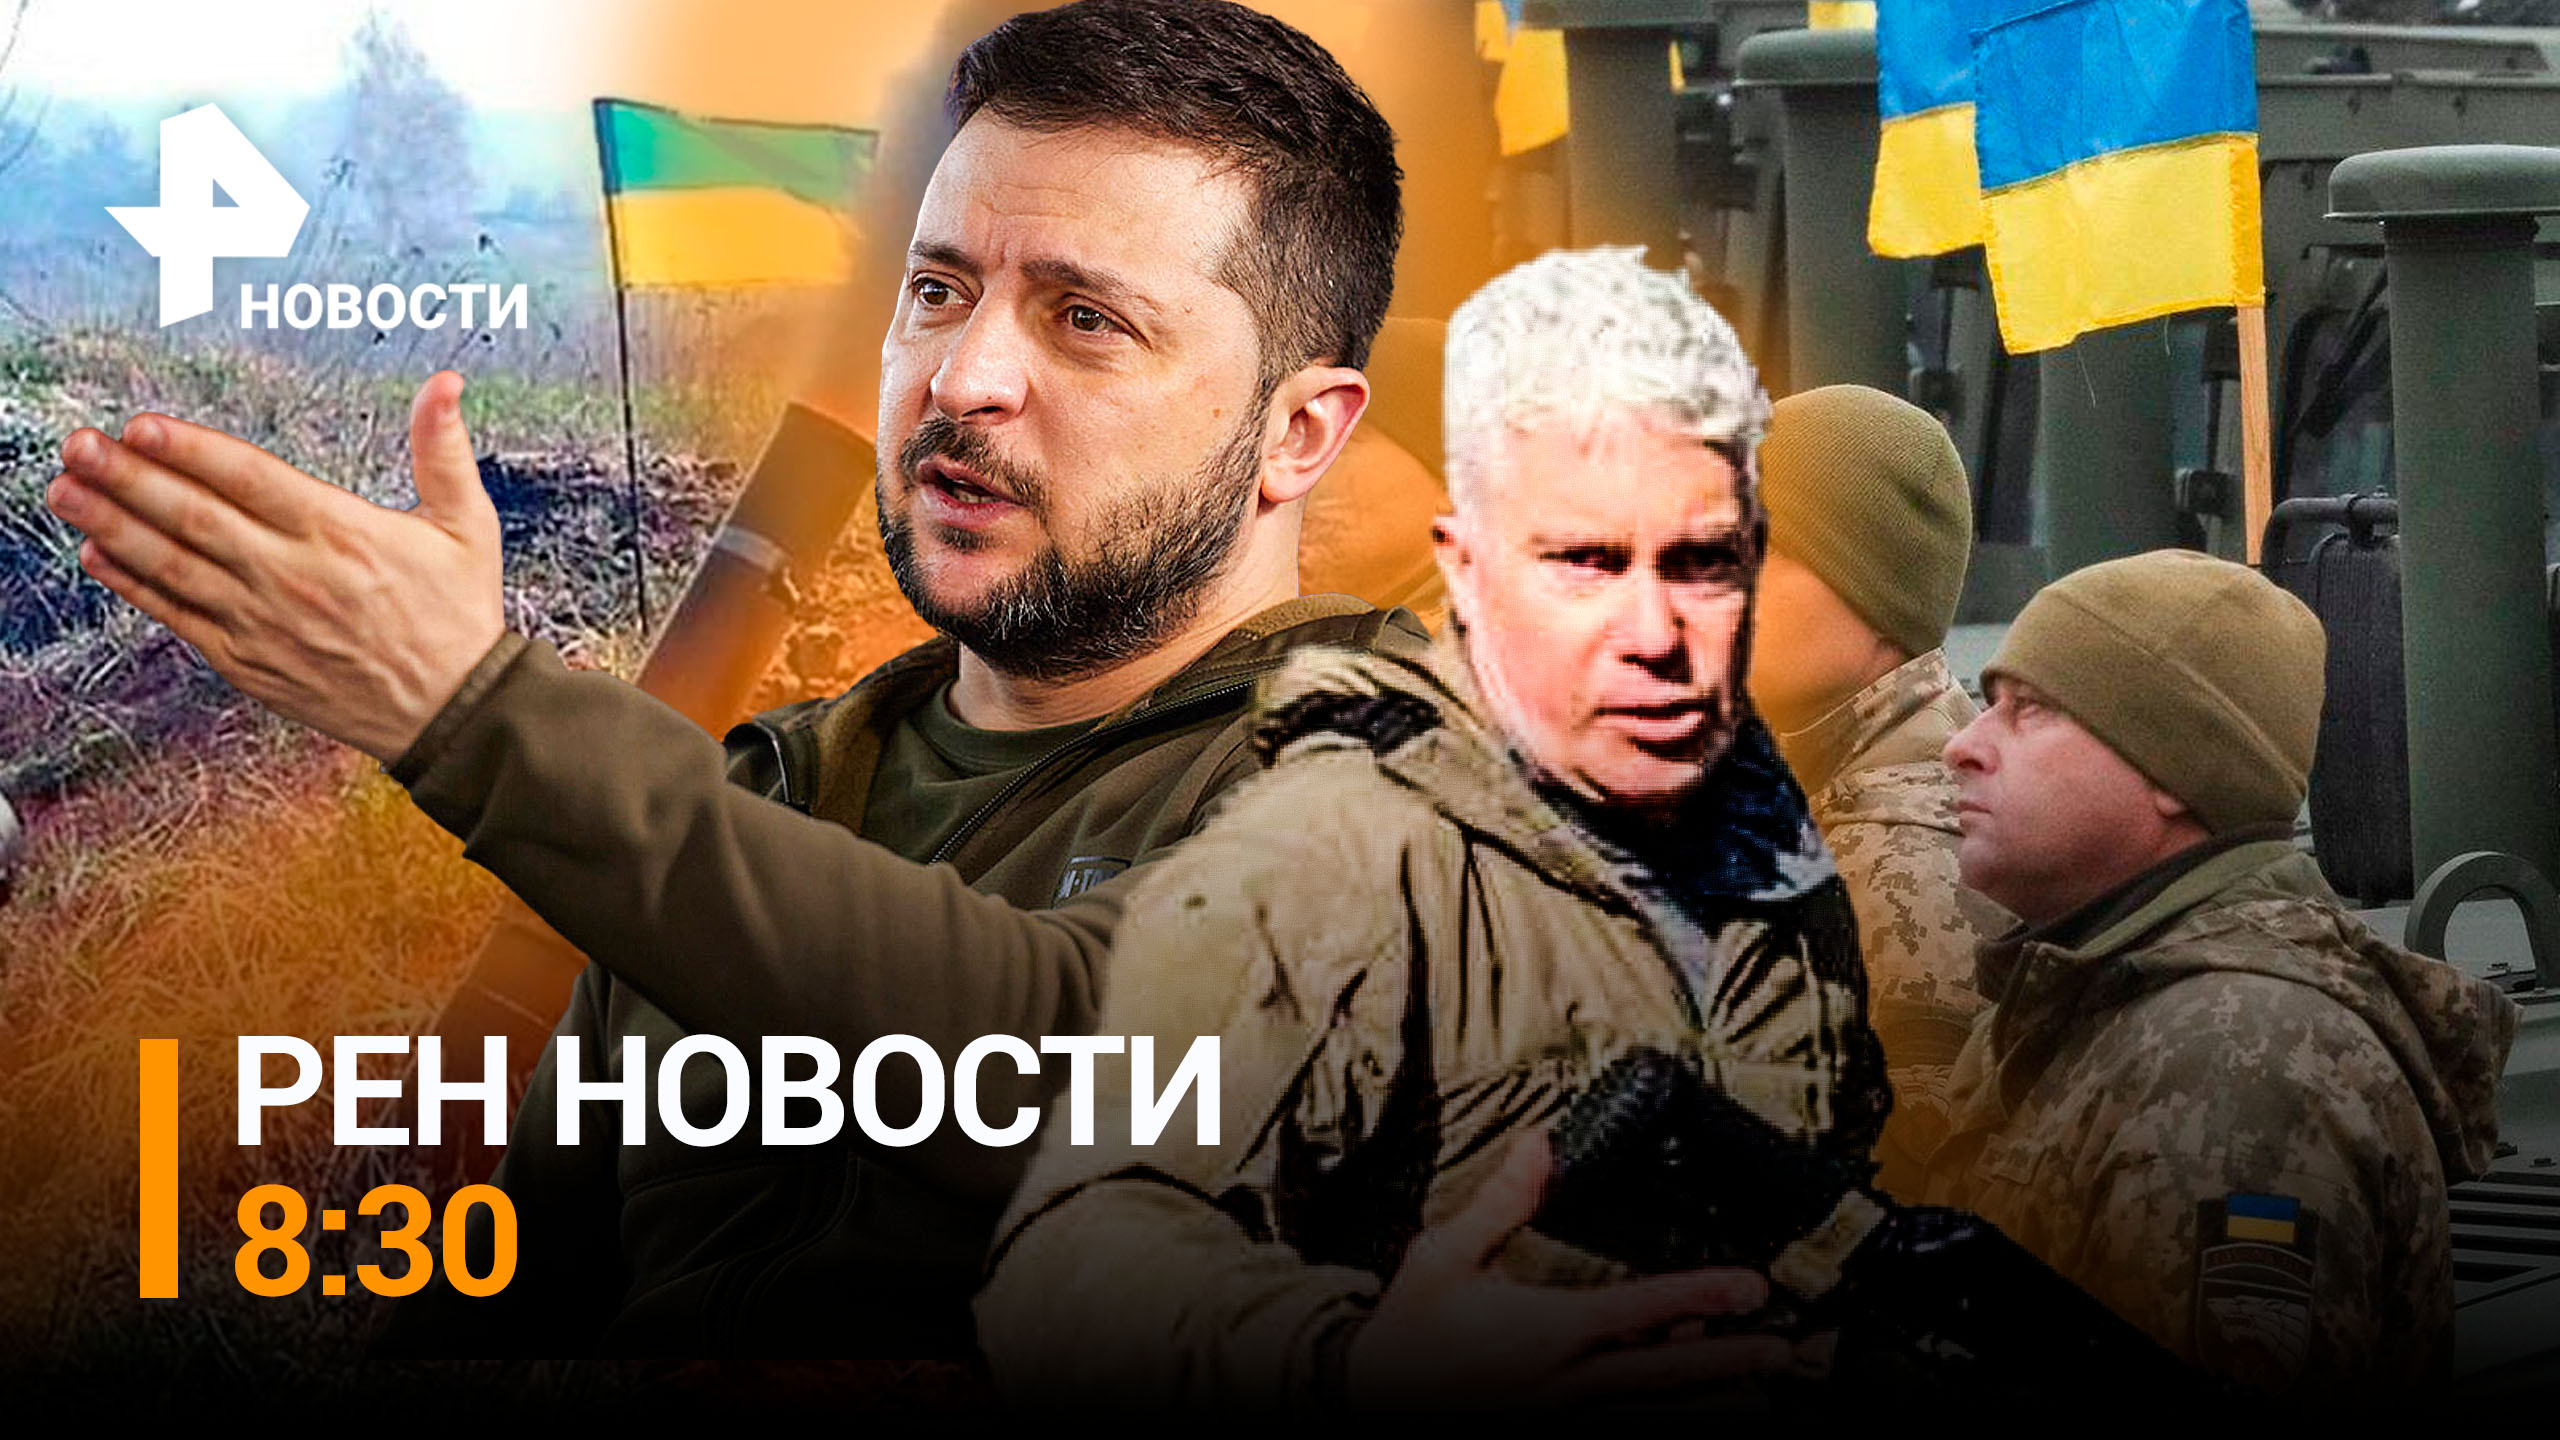 Основатель ЧВК "Моцарт" рассказал о зверствах украинских военных / РЕН ТВ НОВОСТИ 8:30 от 28.12.22